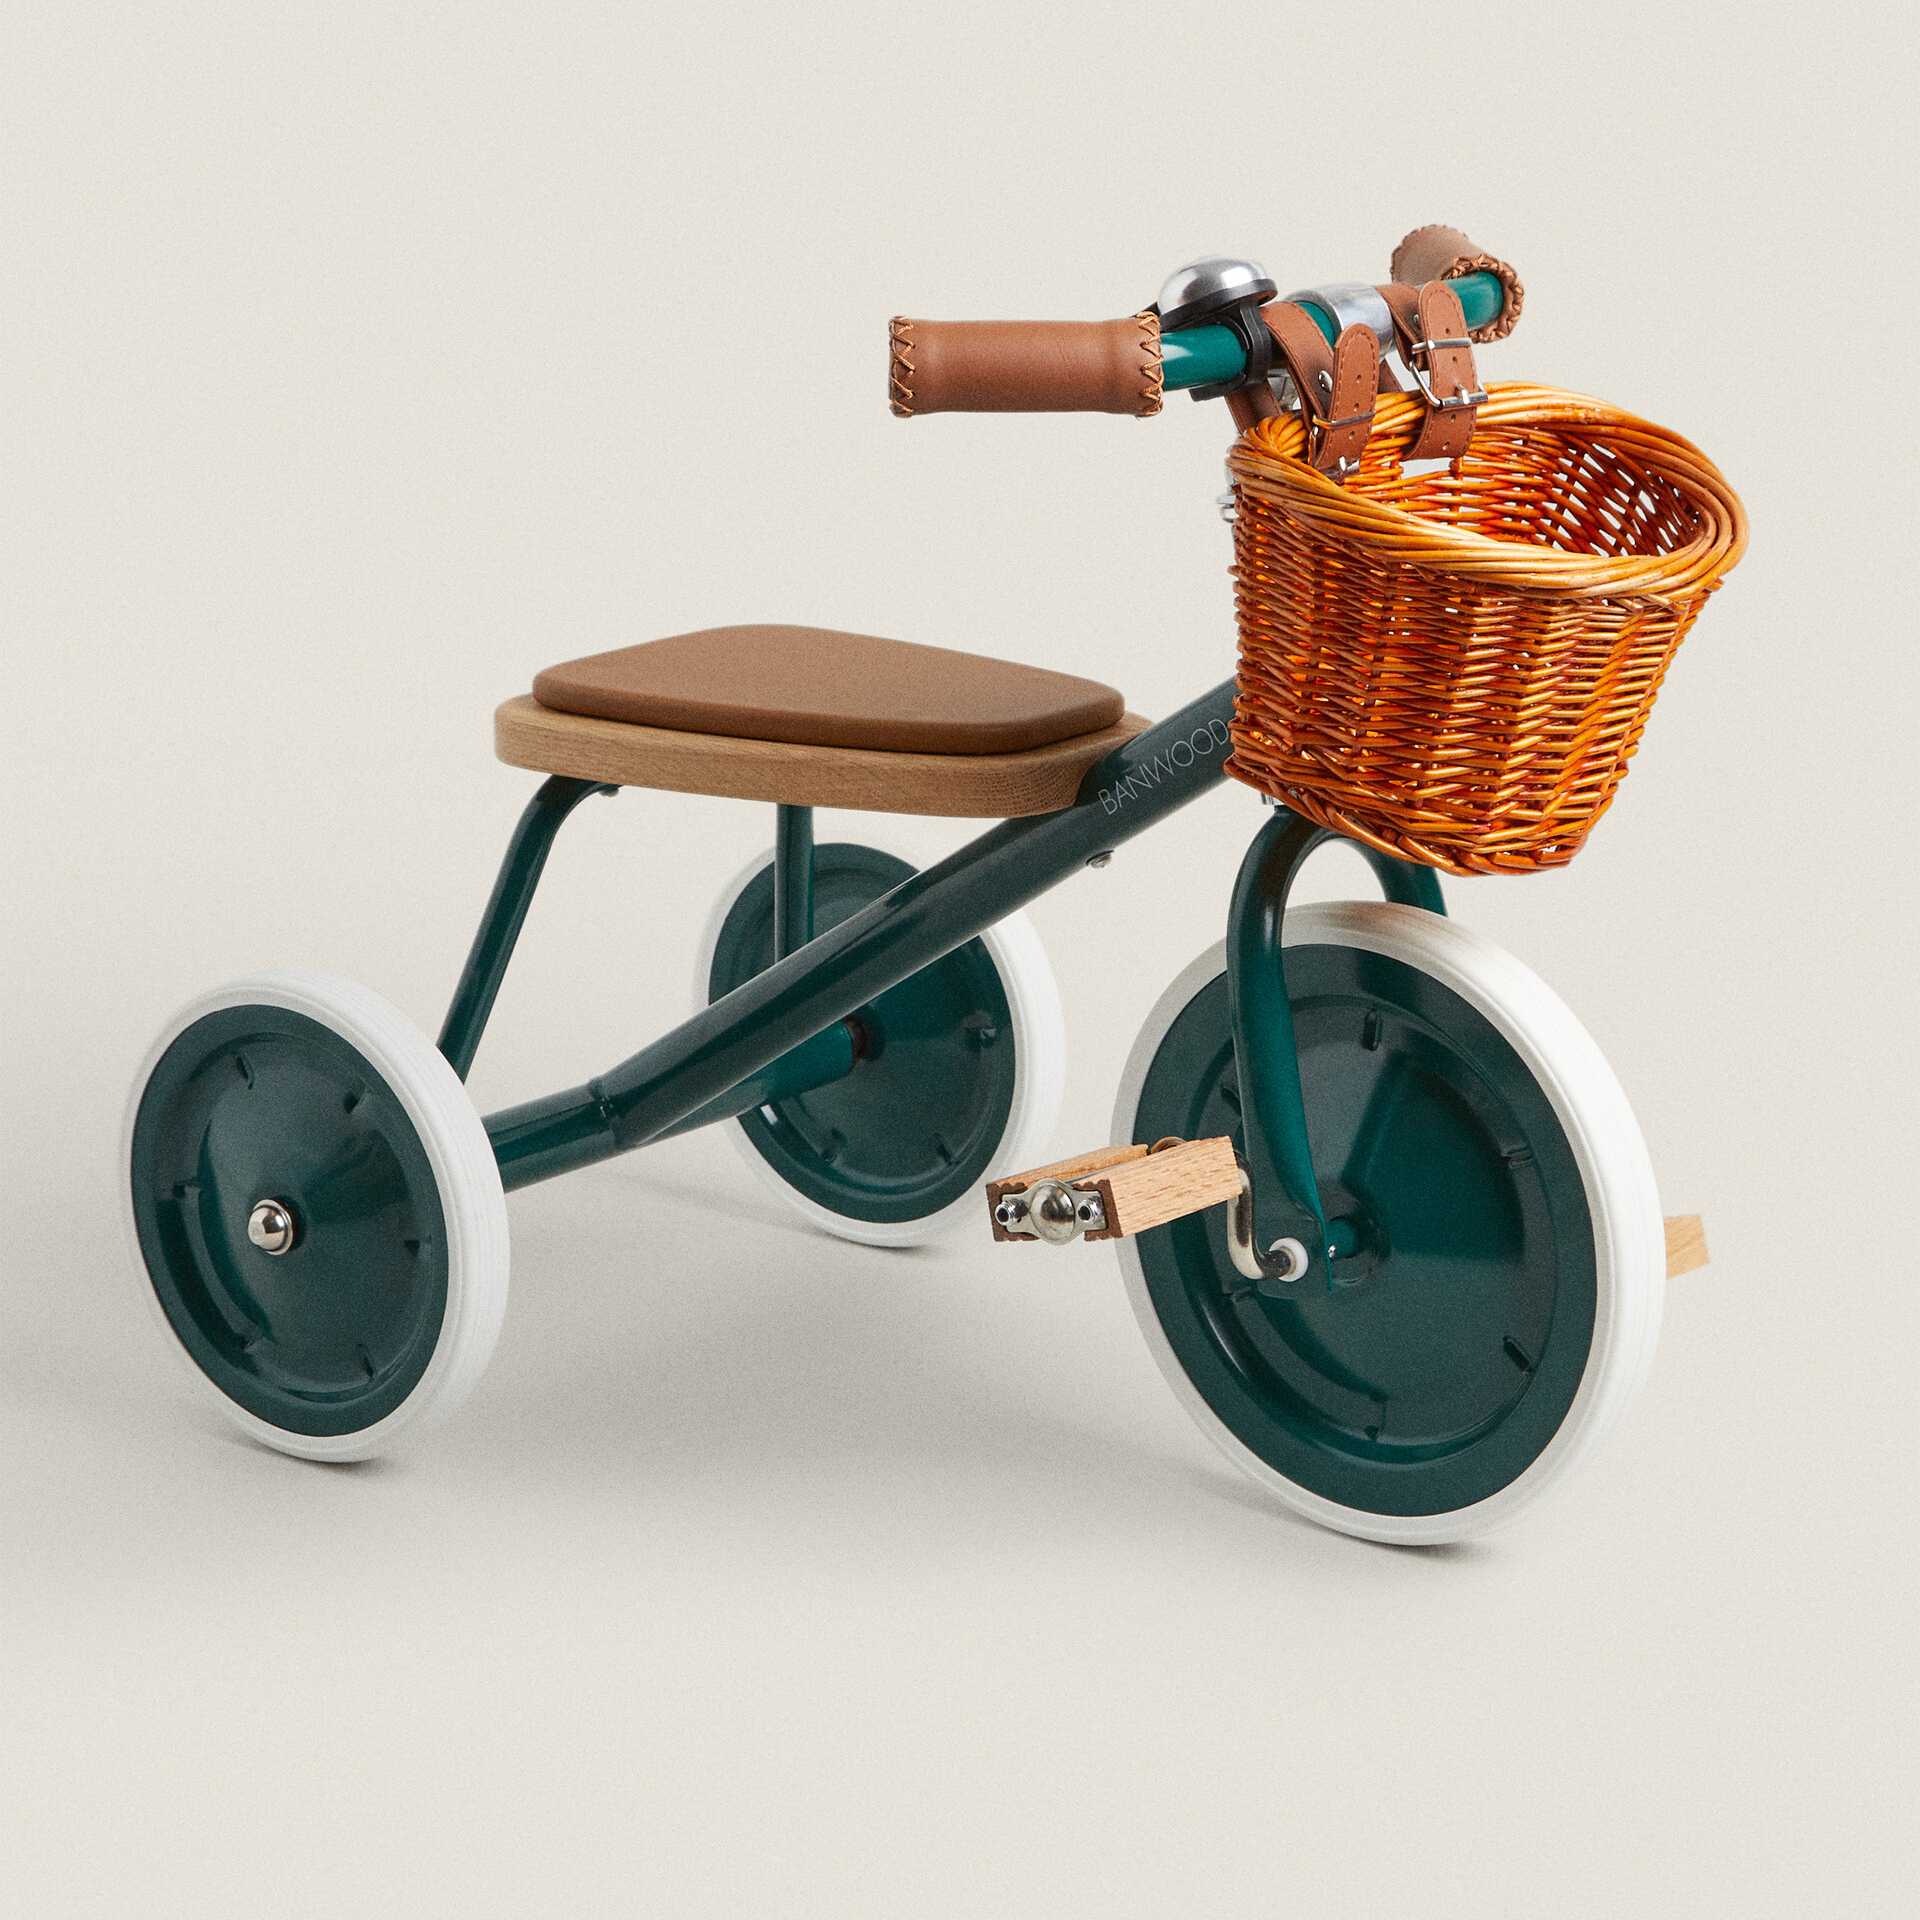 новый детский двойной трехколесный велосипед трехколесный детский трехколесный велосипед с педалью Детский велосипед Zara Home Banwood, зеленый